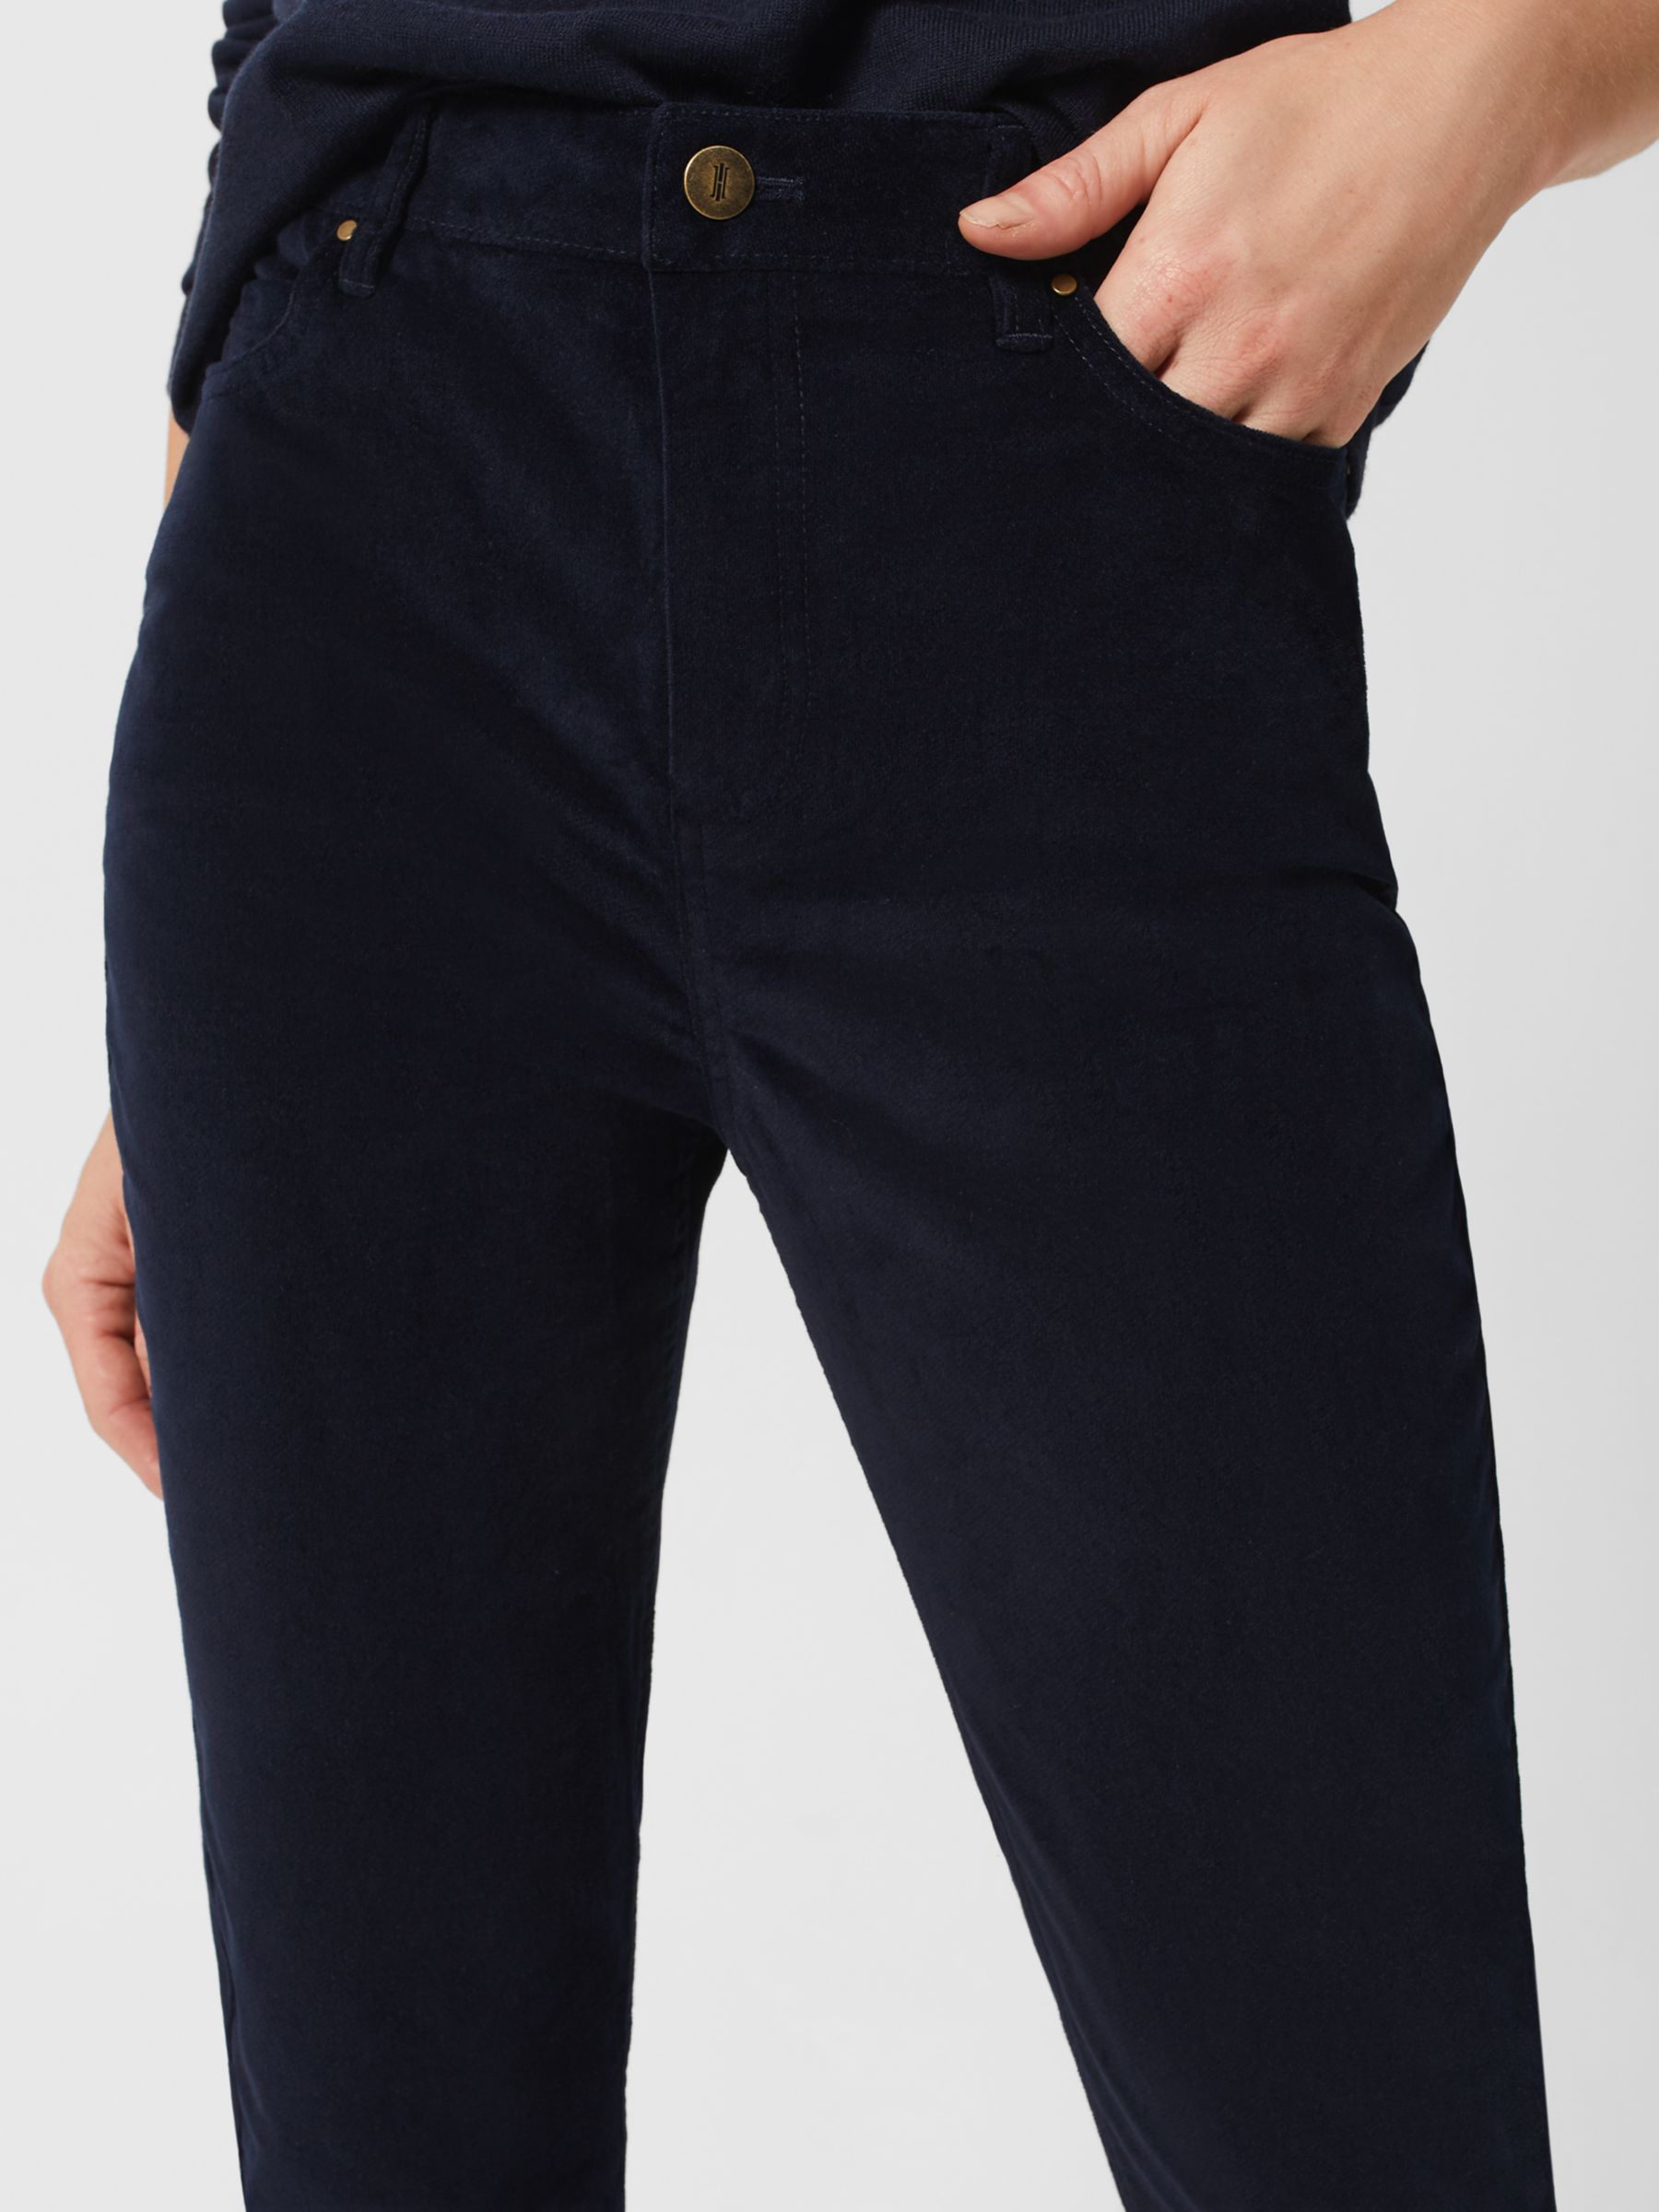 Hobbs Gia Velvet Skinny Jeans, Navy, 10